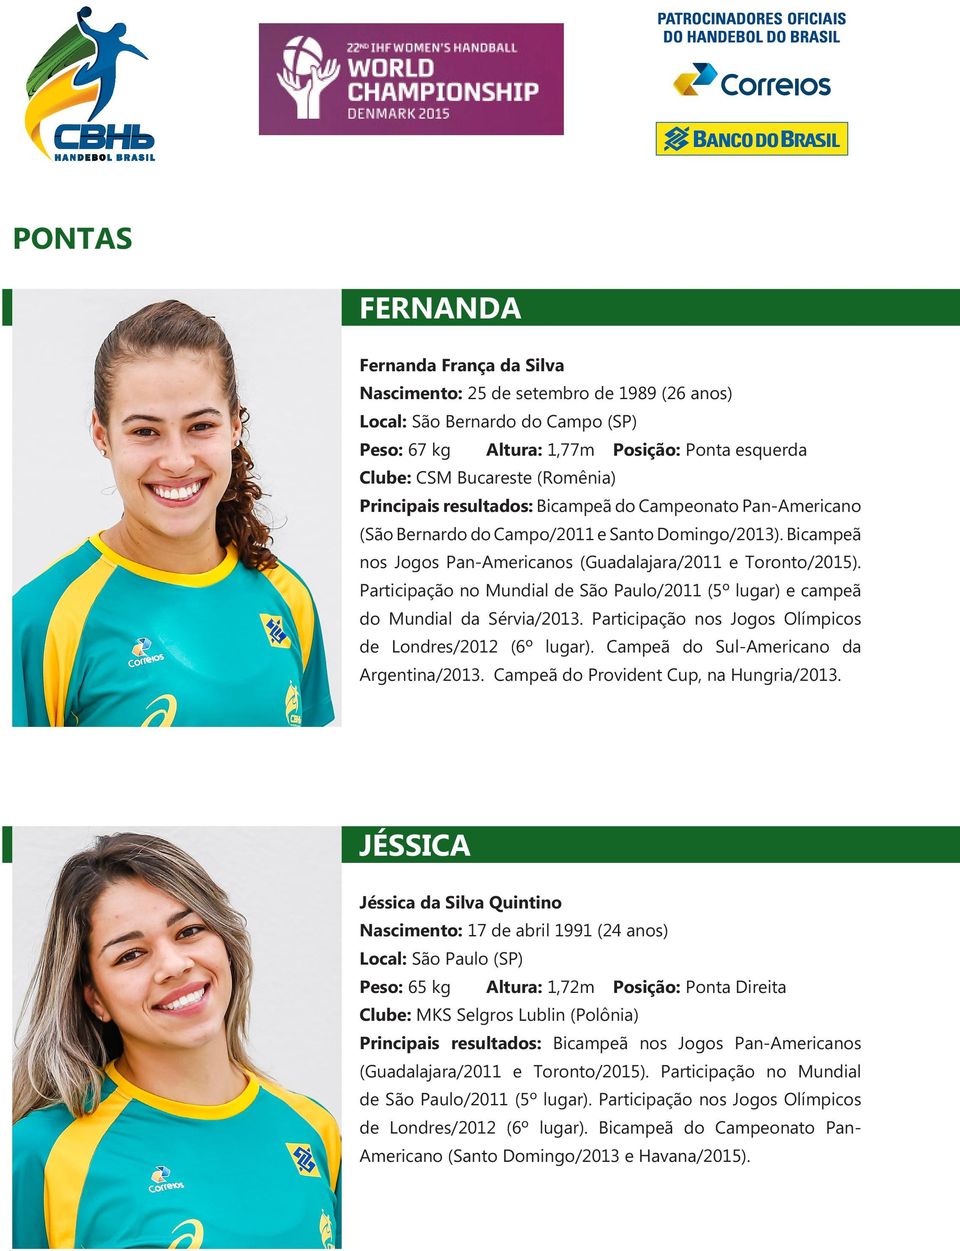 Participação no Mundial de São Paulo/2011 (5º lugar) e campeã do Mundial da Sérvia/2013. Participação nos Jogos Olímpicos de Londres/2012 (6º lugar). Campeã do Sul-Americano da Argentina/2013.